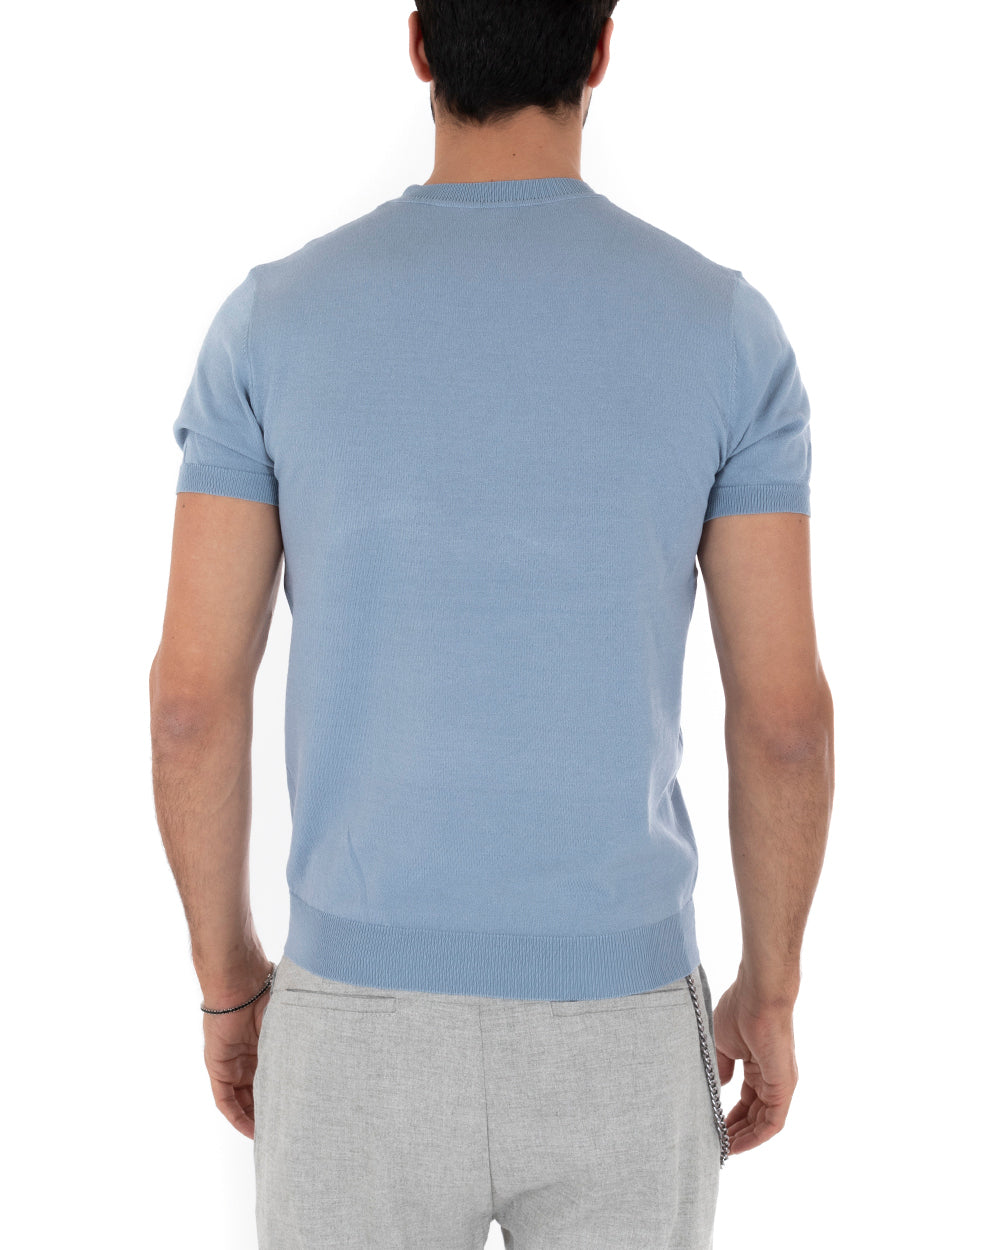 T-Shirt Uomo Maniche Corte Tinta Unita Polvere Girocollo Filo Casual GIOSAL-TS3052A